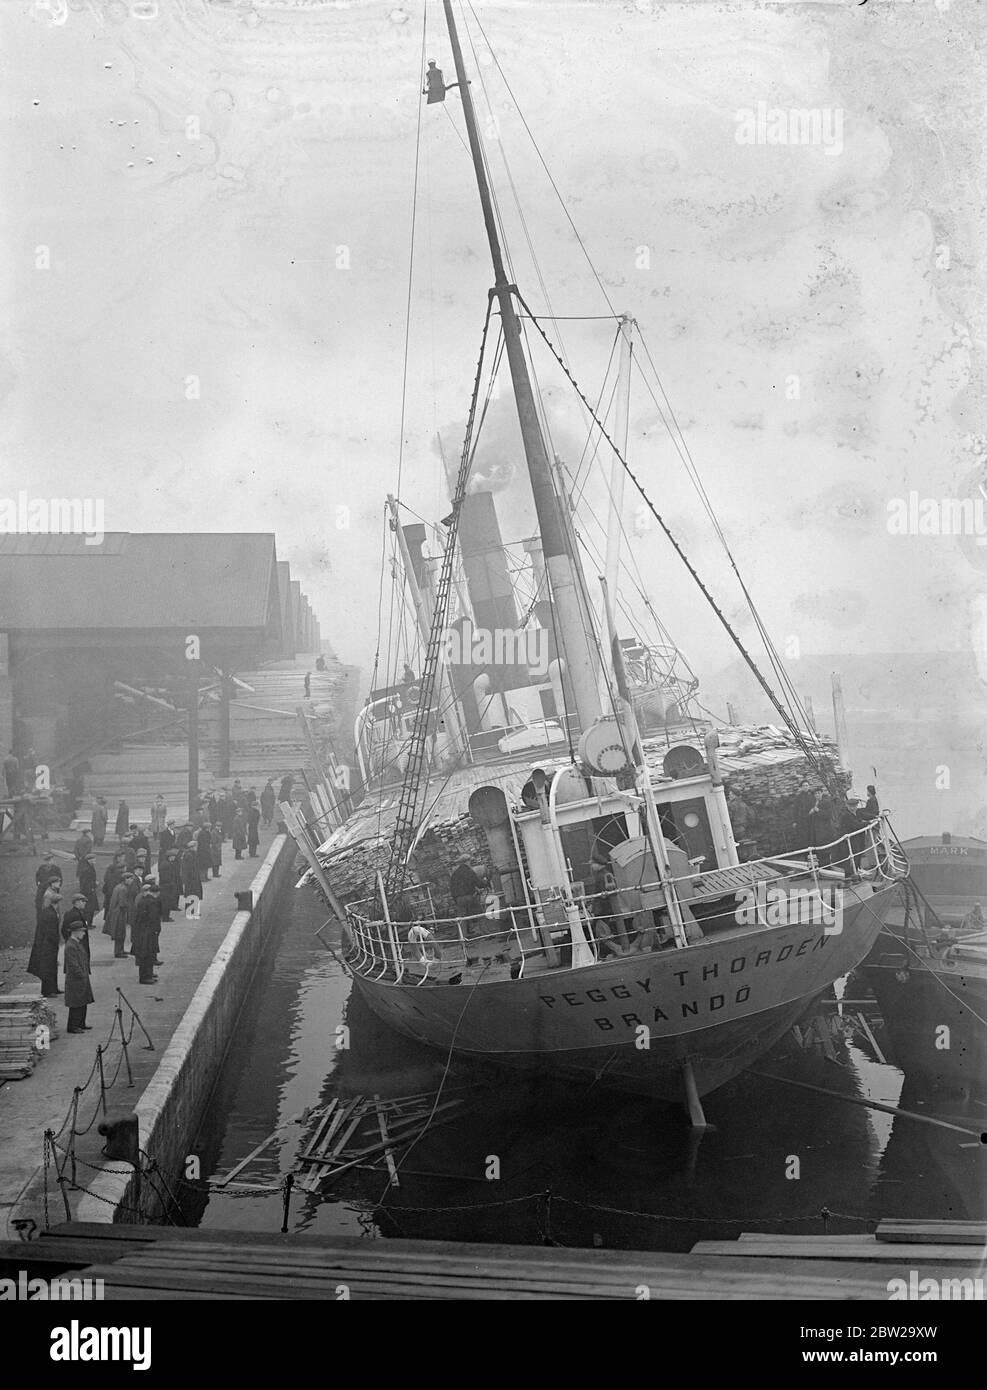 Dampfer mit Liste der 20Â in Surrey kommerziellen Docks, Frachtschiffe in schwerer See. Die finnische Dampfer 'Pegy Thorden' befindet sich im Hafen von QuÃ©bec, Surrey Commercial Docks, nachdem ihre Holzladung auf der Reise von Walkom auf der schweren See verschoben wurde und eine Liste von Grad verursachte. Einmal waren die Decks im QuÃ©bec Dock überflutet, und die Stevedores warteten darauf, dass das Gleichgewicht der Schiffe wiederhergestellt wurde, bevor sie sie entladen. Dezember 1937 Stockfoto